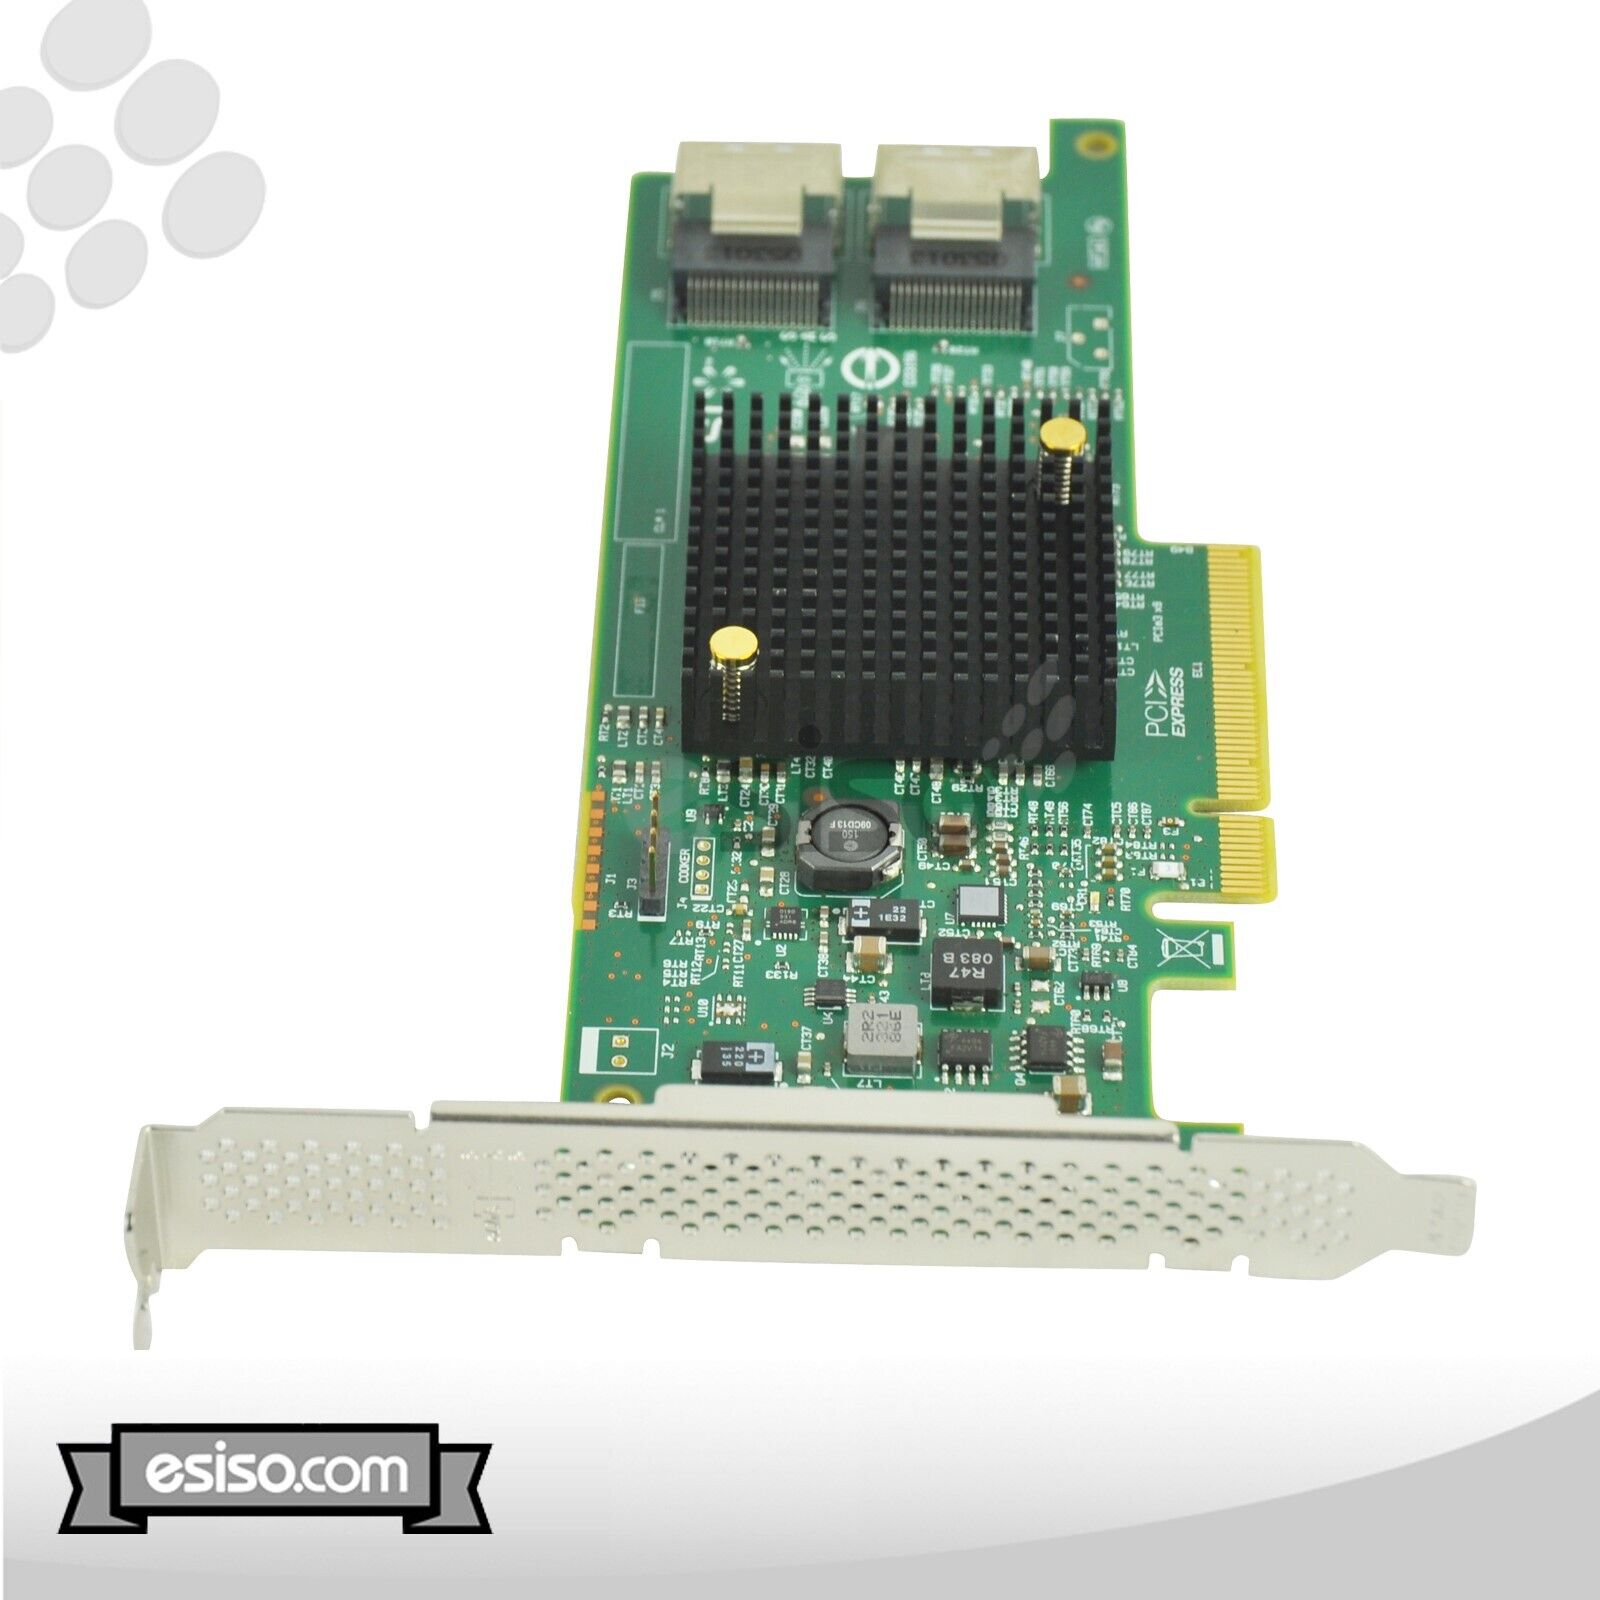 SAS9207-8I LSI00301 LSI SAS 9207-8I 6GB/S PCI-E RAID CONTROLLER CARD